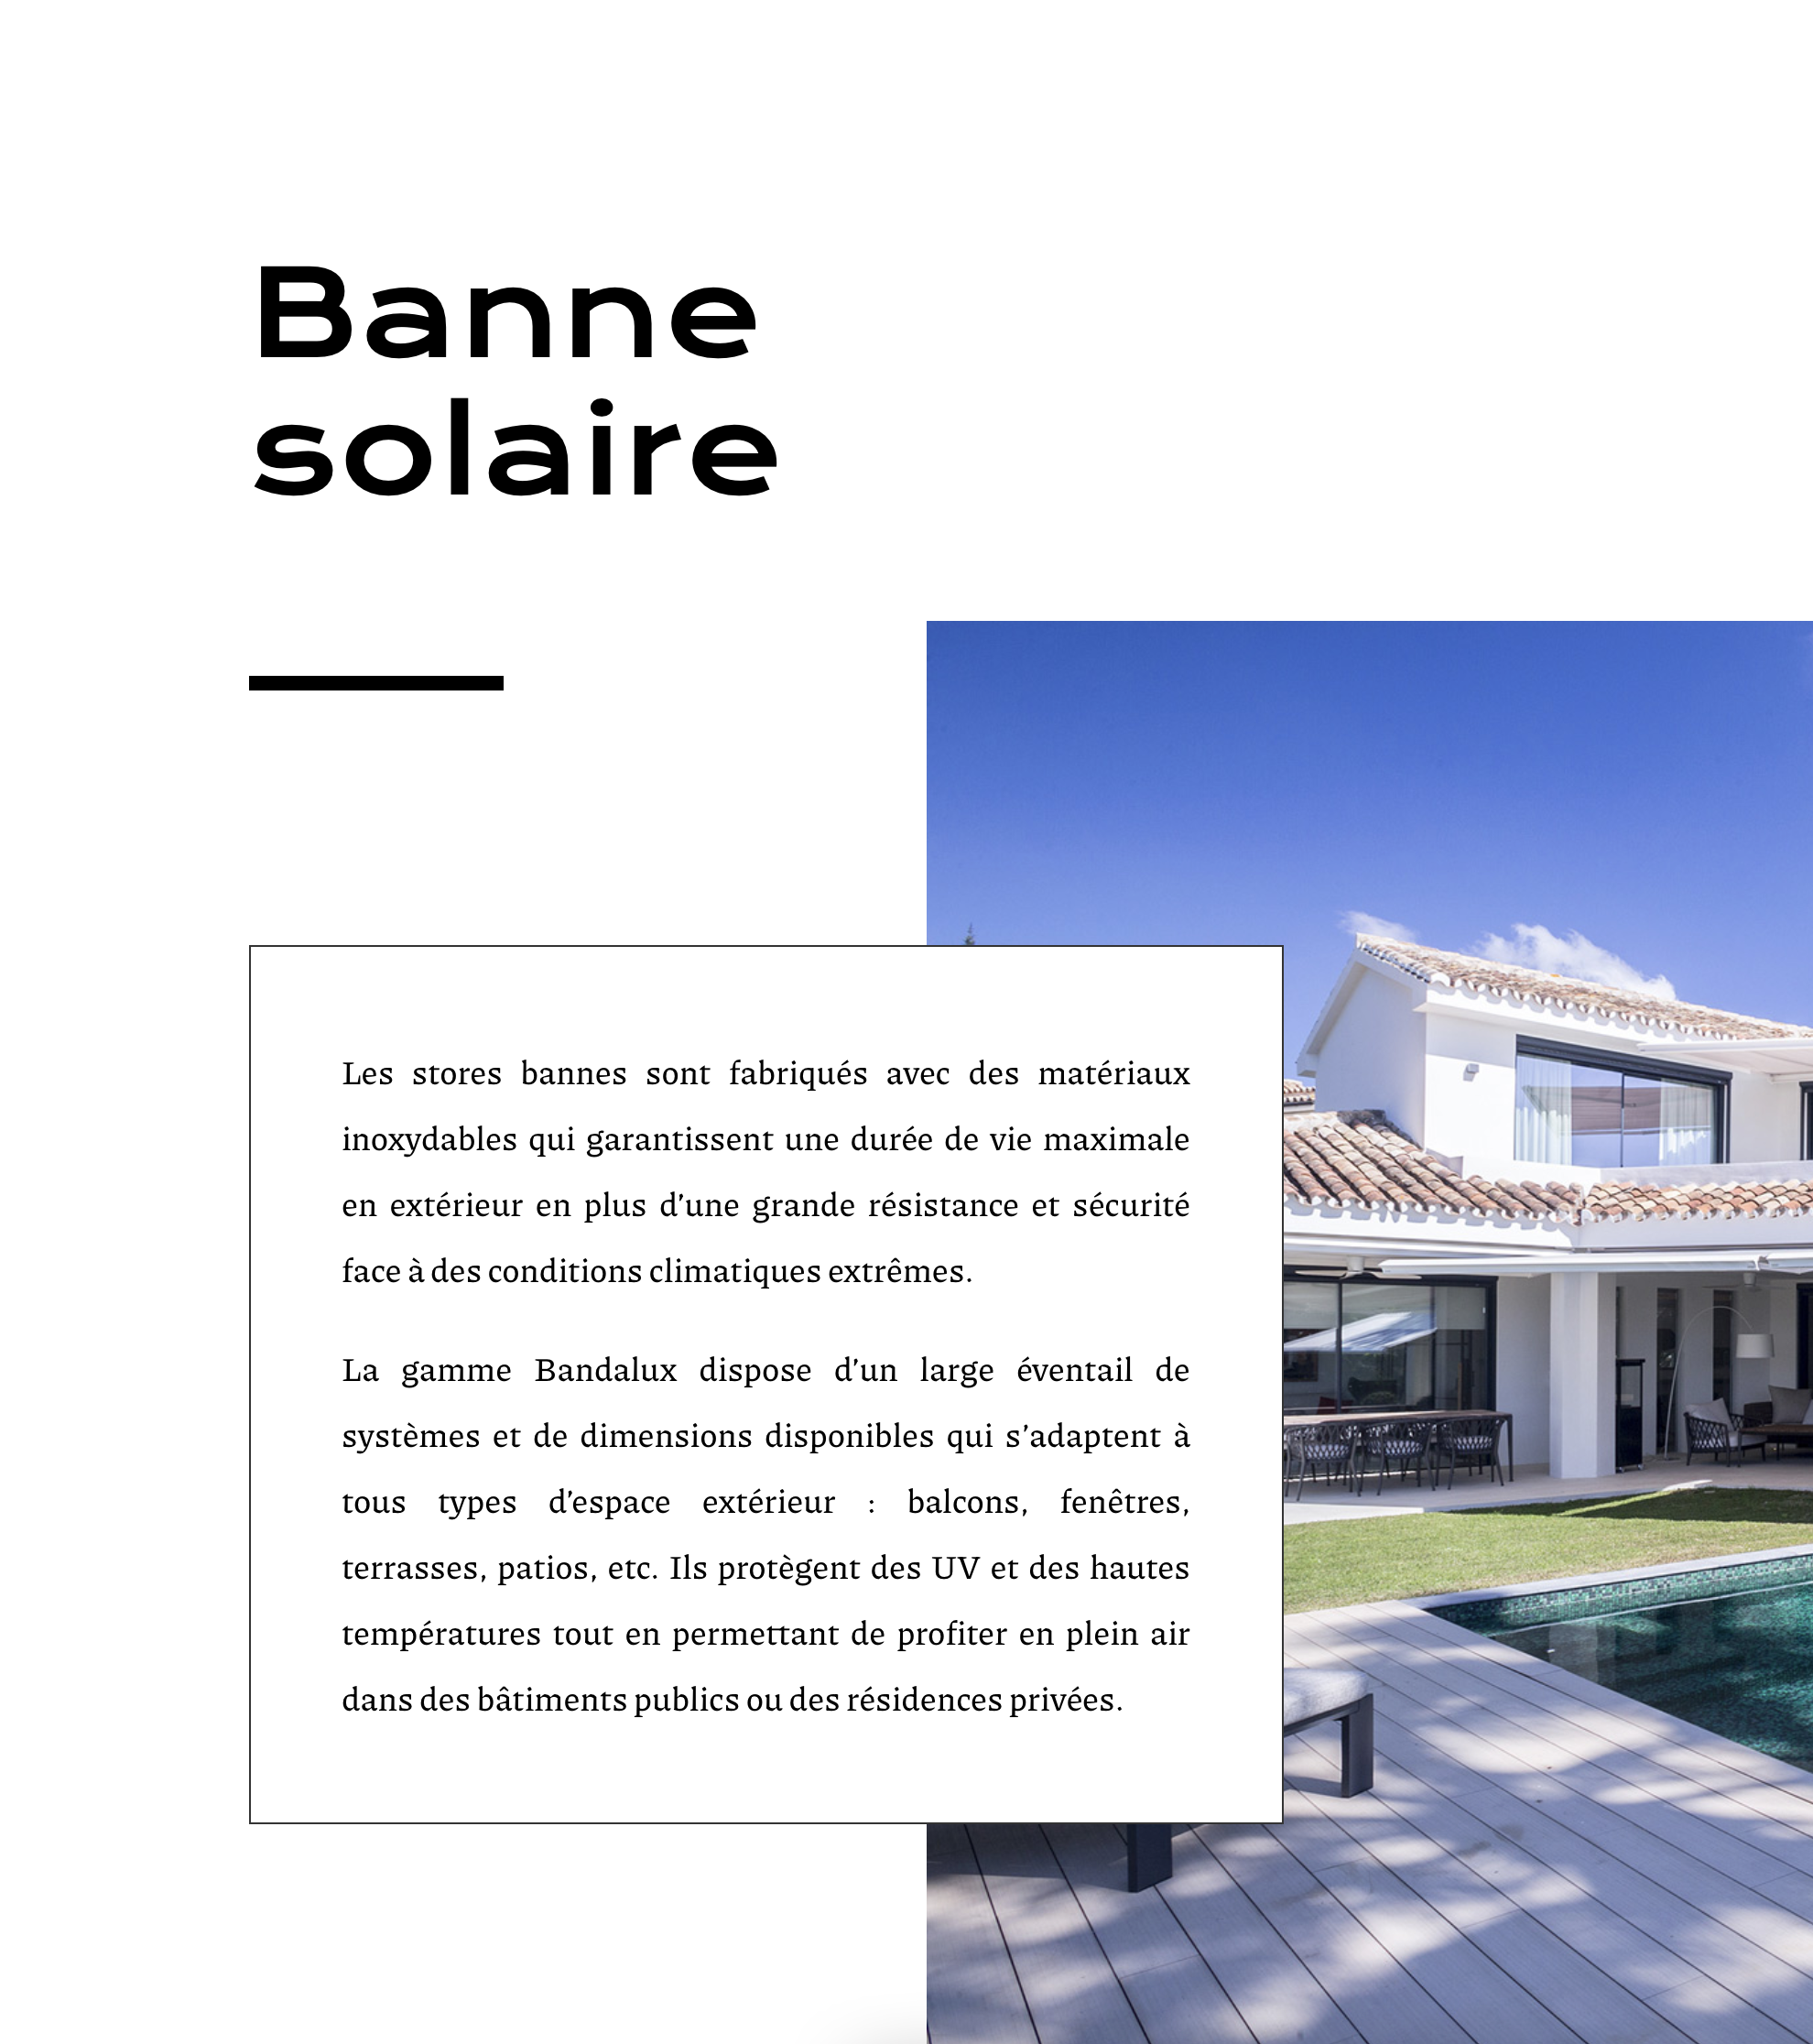 Capture de la page "banne solaire" du site www.le-store.be